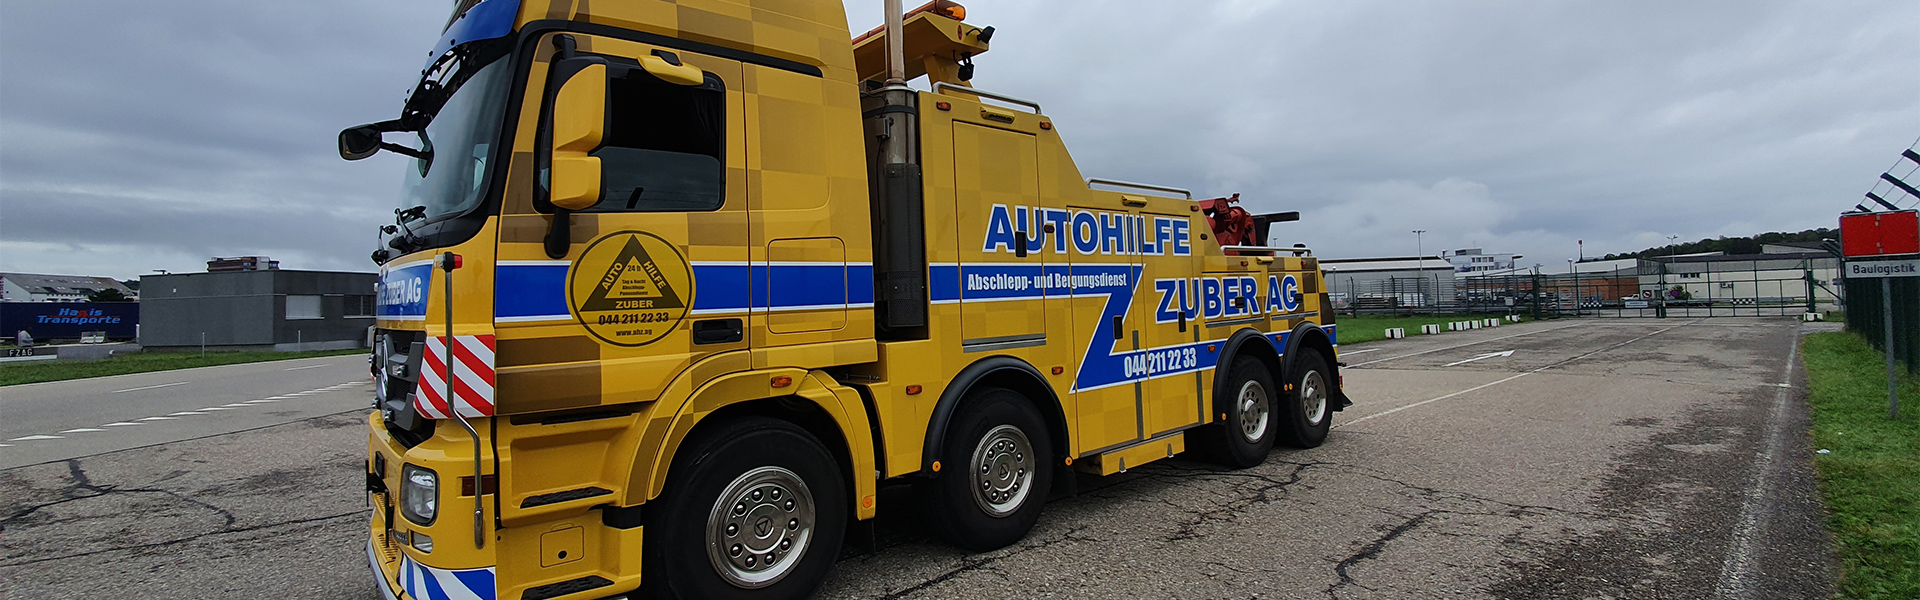 Autohilfe Zuber - Ihr Mobilitätsdienstleister in Zürich für LKW